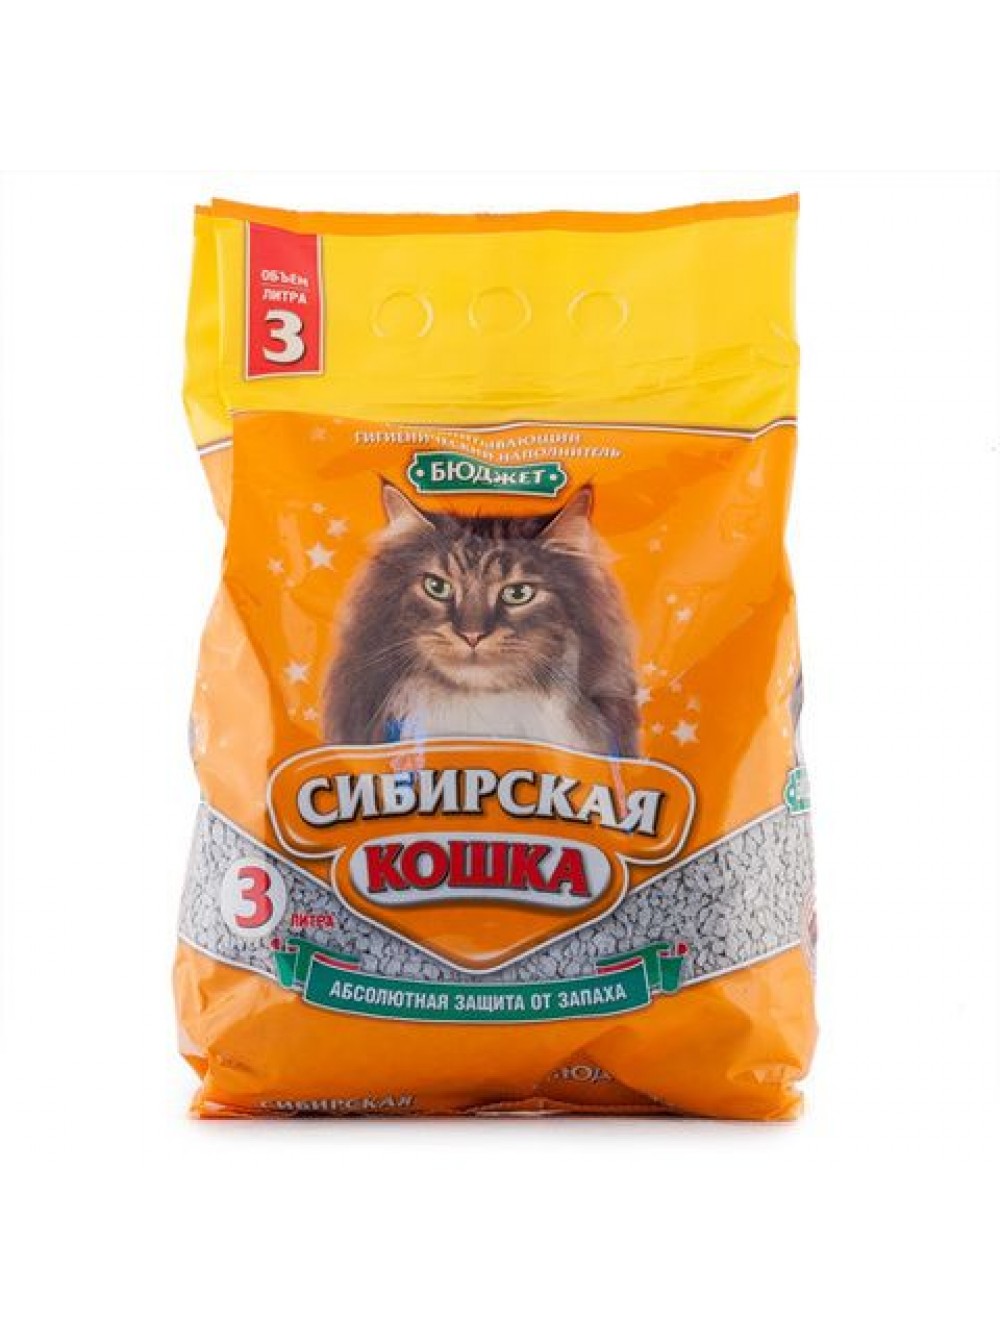 Наполнитель впитывающий для кошачьего туалета Сибирская кошка бюджет 3 л